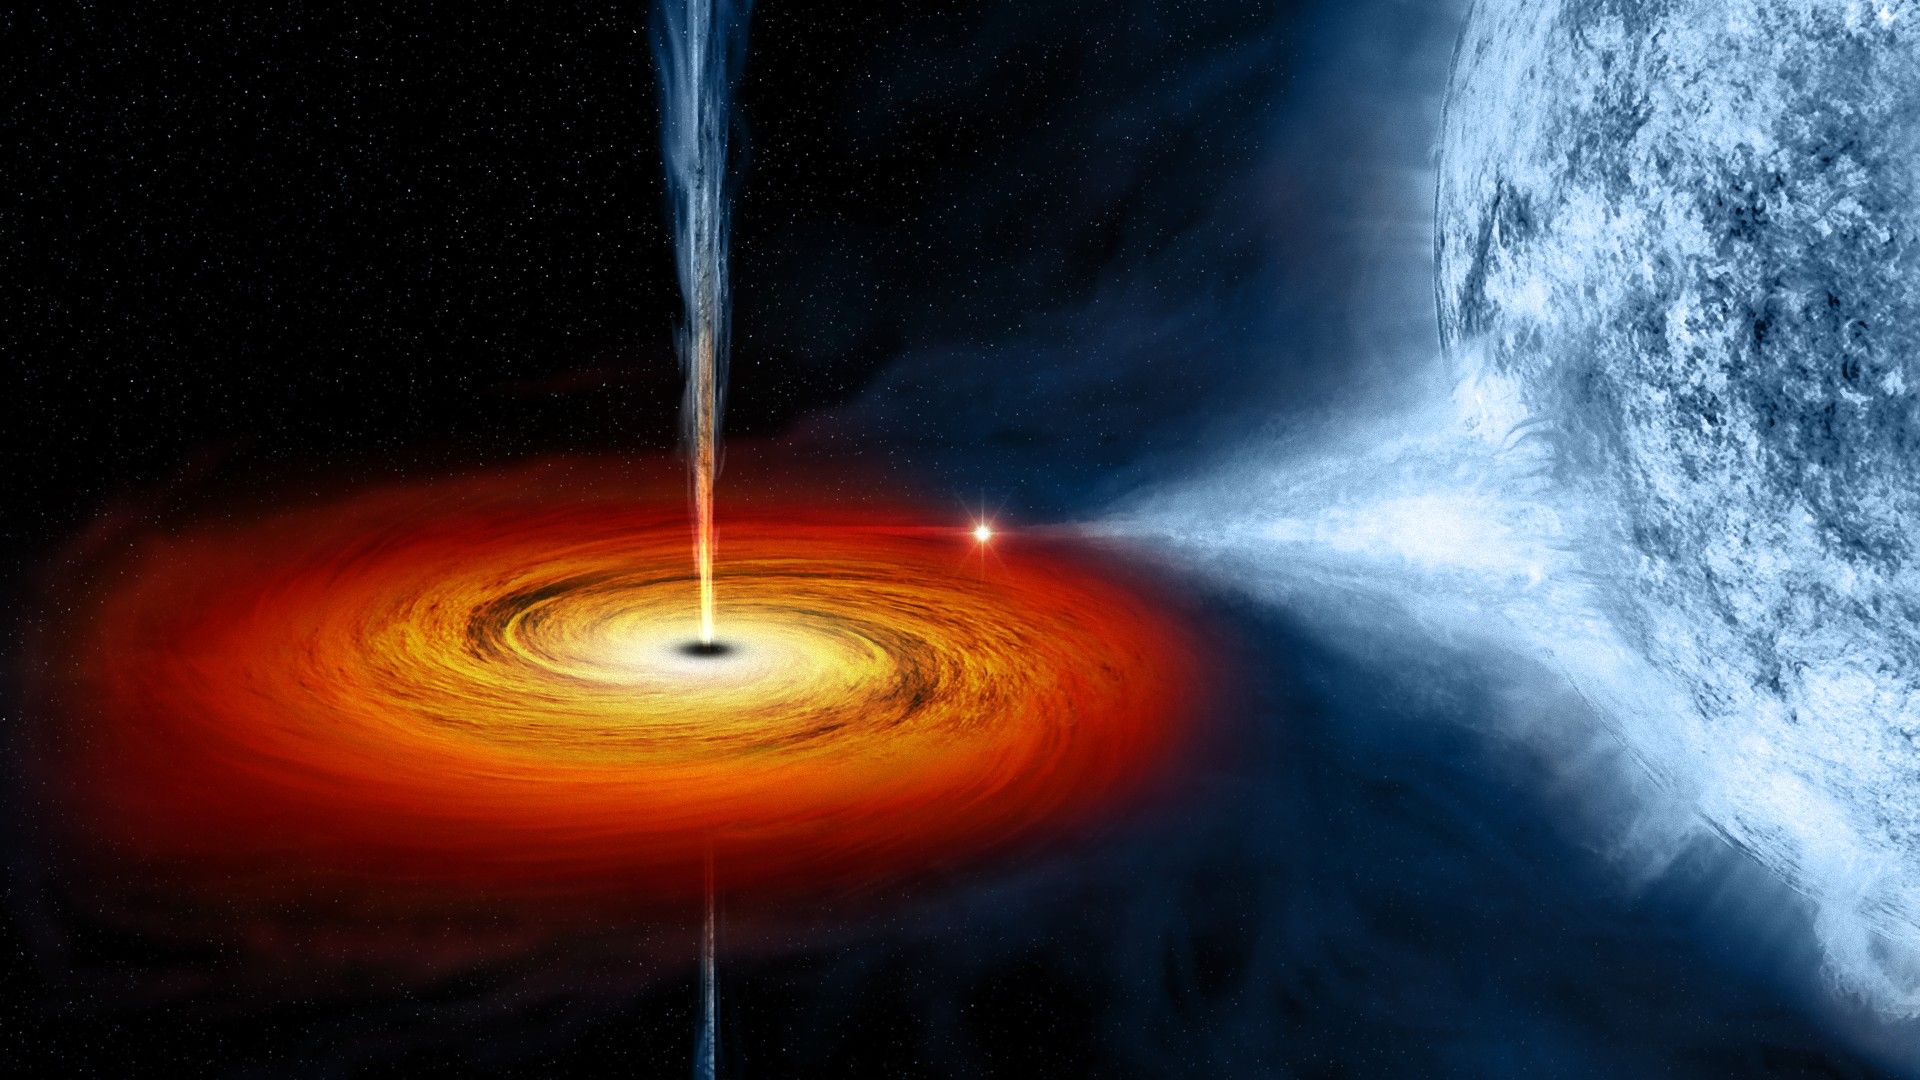 عکس فضایی زیبا و جدید از سیاه چاله فضایی